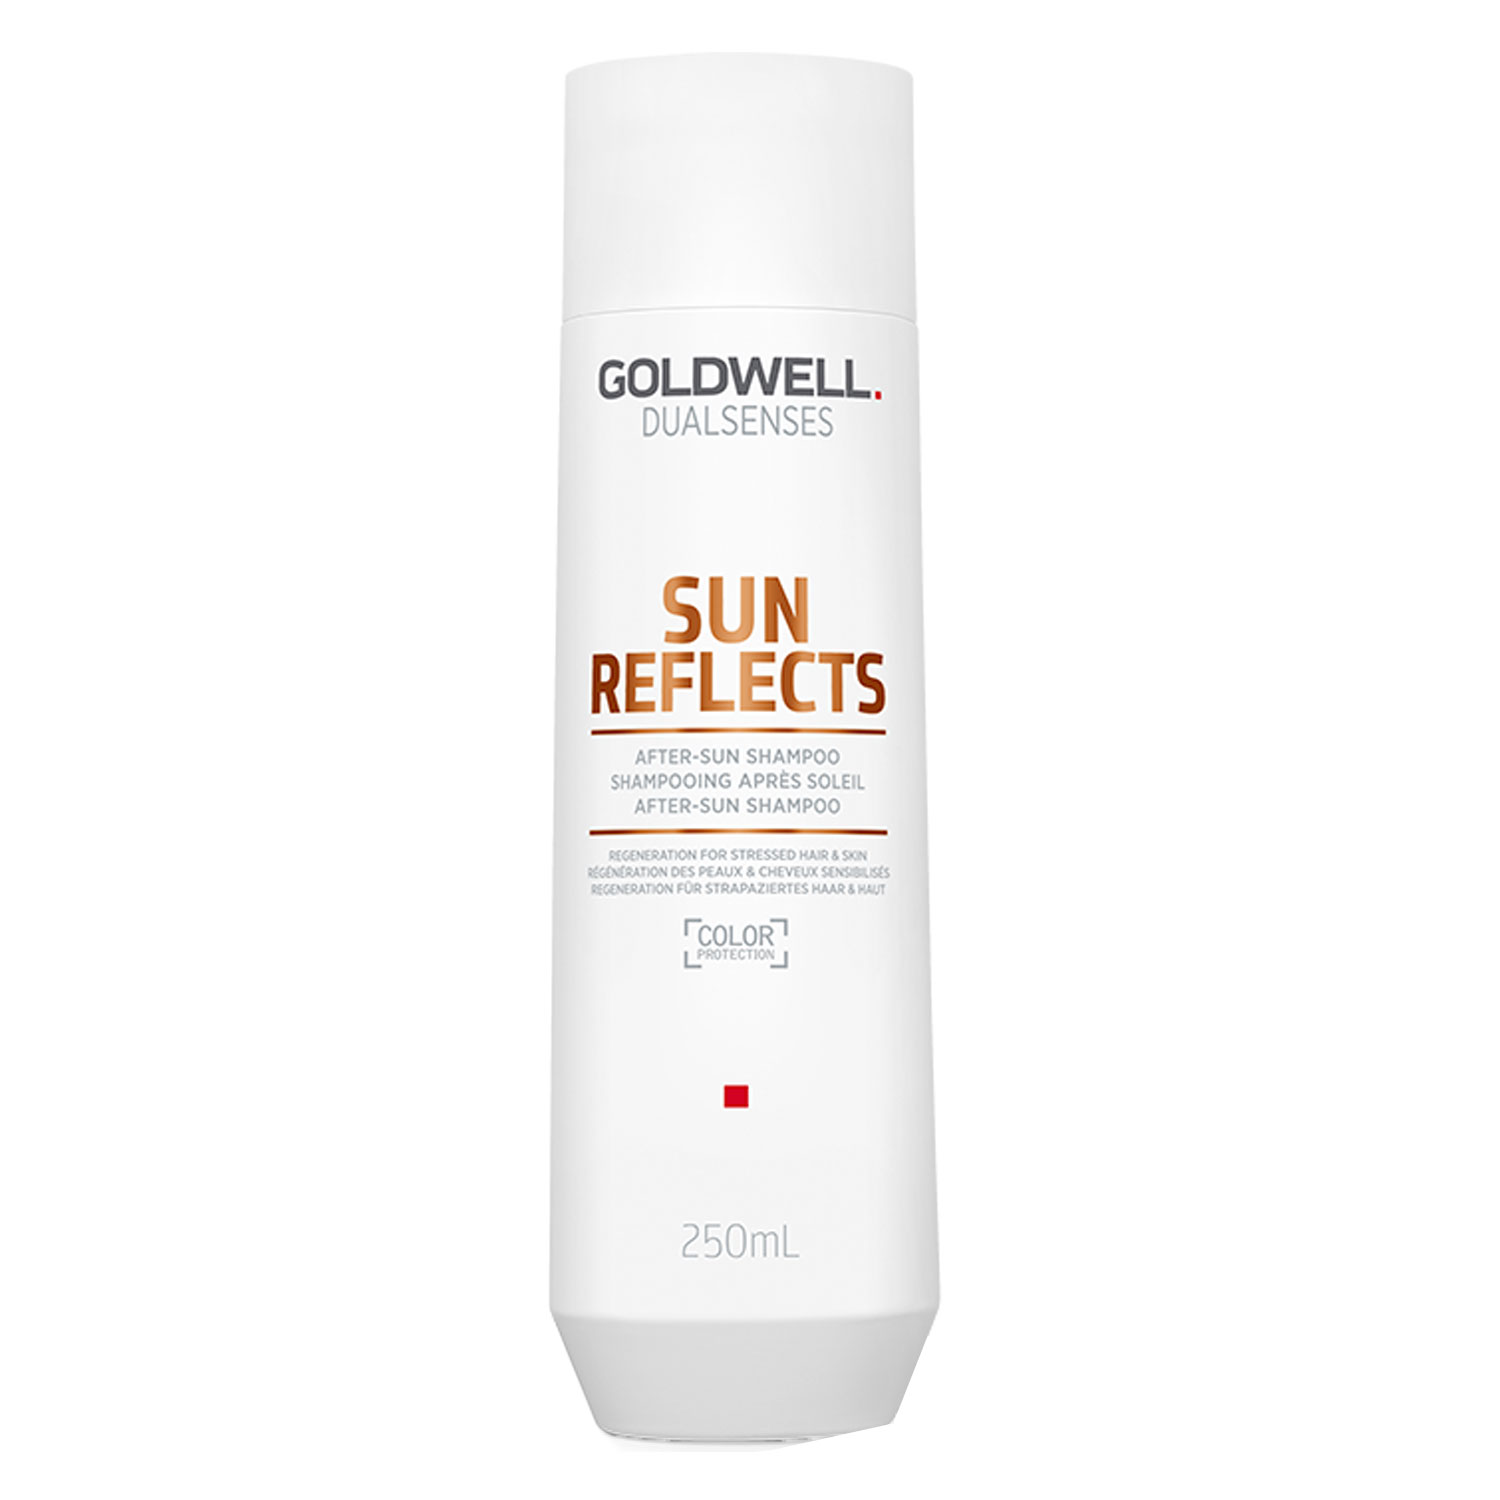 Goldwell Dualsenses Sun Reflects - After-Sun Shampoo 